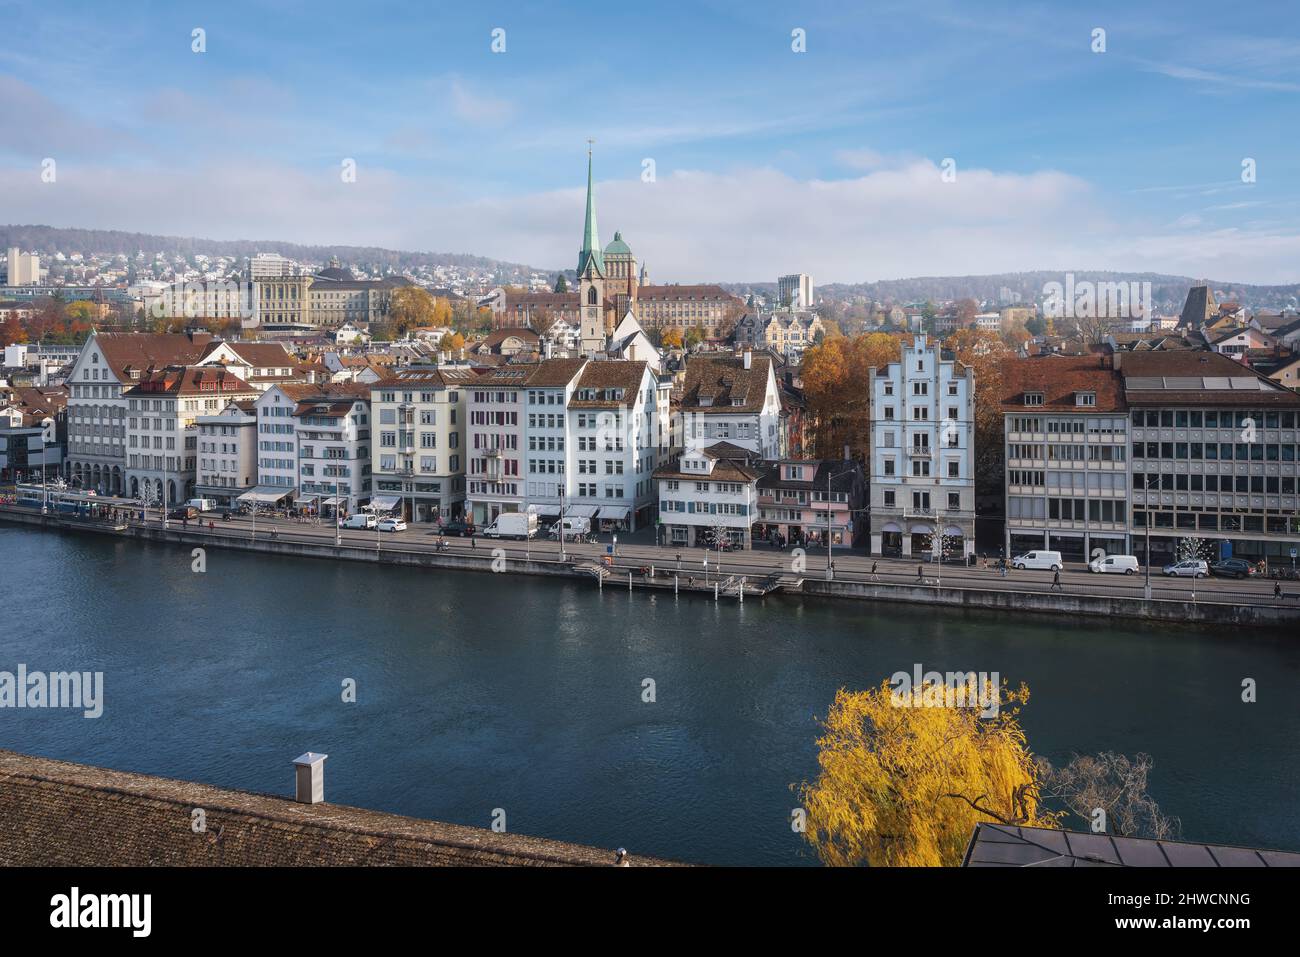 Veduta aerea dello skyline di Zurigo con la Chiesa di Predigerkirche e il fiume Limmat - Zurigo, Svizzera Foto Stock